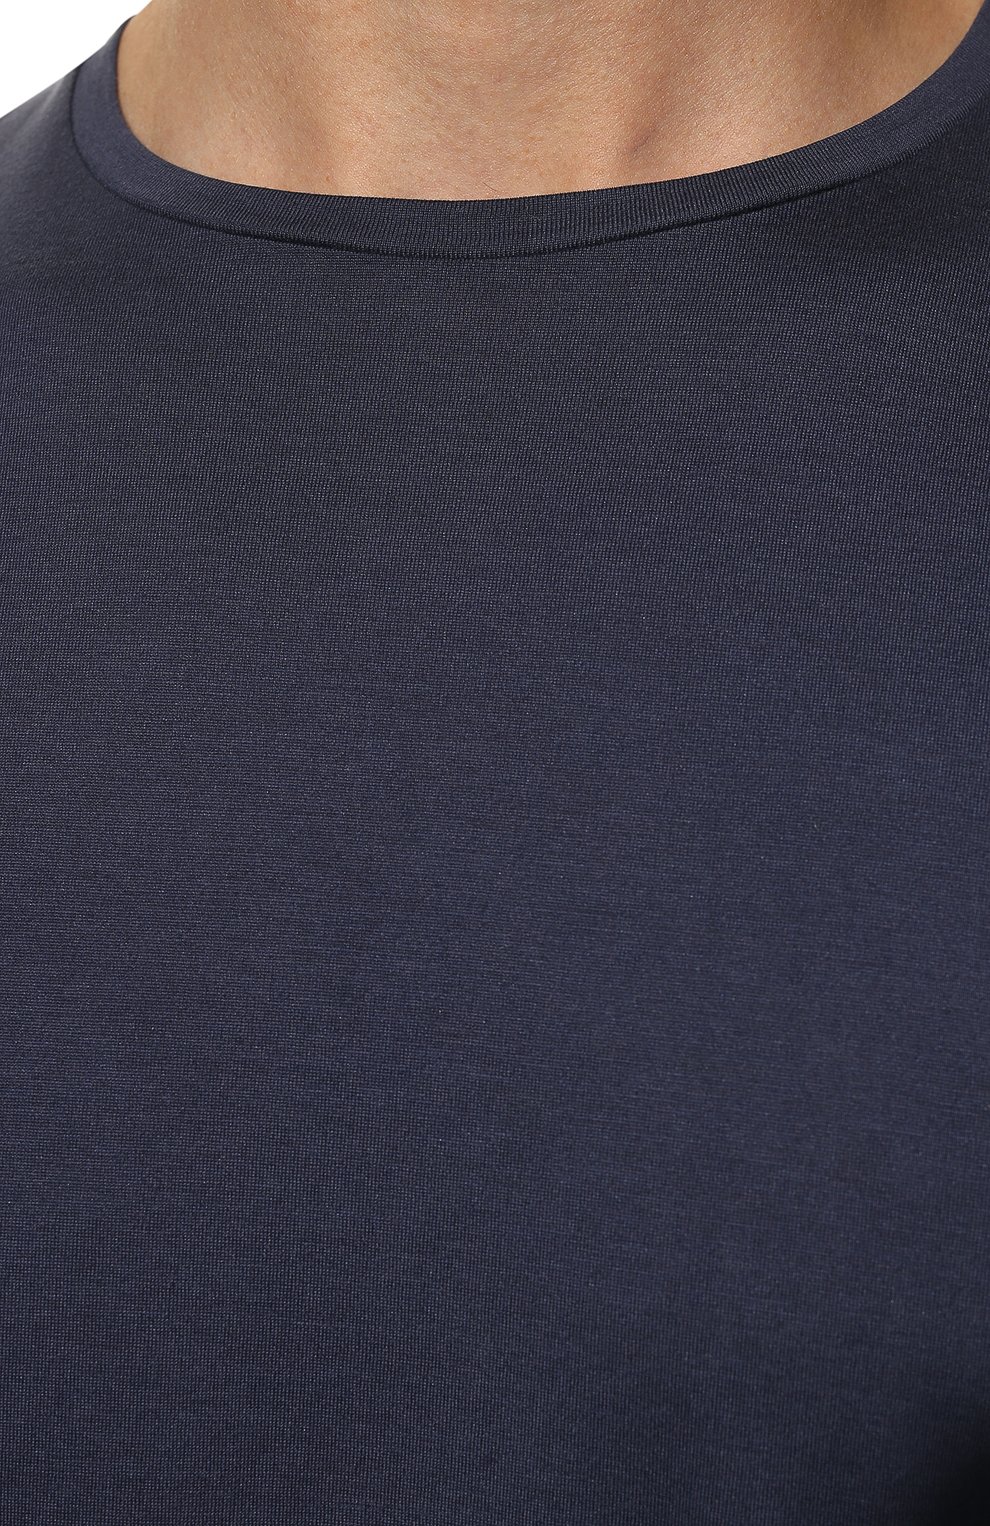 Мужская футболка из шелка и хлопка LORO PIANA темно-синего цвета, арт. FAF6128 | Фото 5 (Материал внешний: Шелк, Хлопок; Big photo: Big photo; Принт: Без принта; Рукава: Короткие; Длина (для топов): Стандартные; Мужское Кросс-КТ: Футболка-одежда; Стили: Кэжуэл; Статус проверки: Проверена категория)